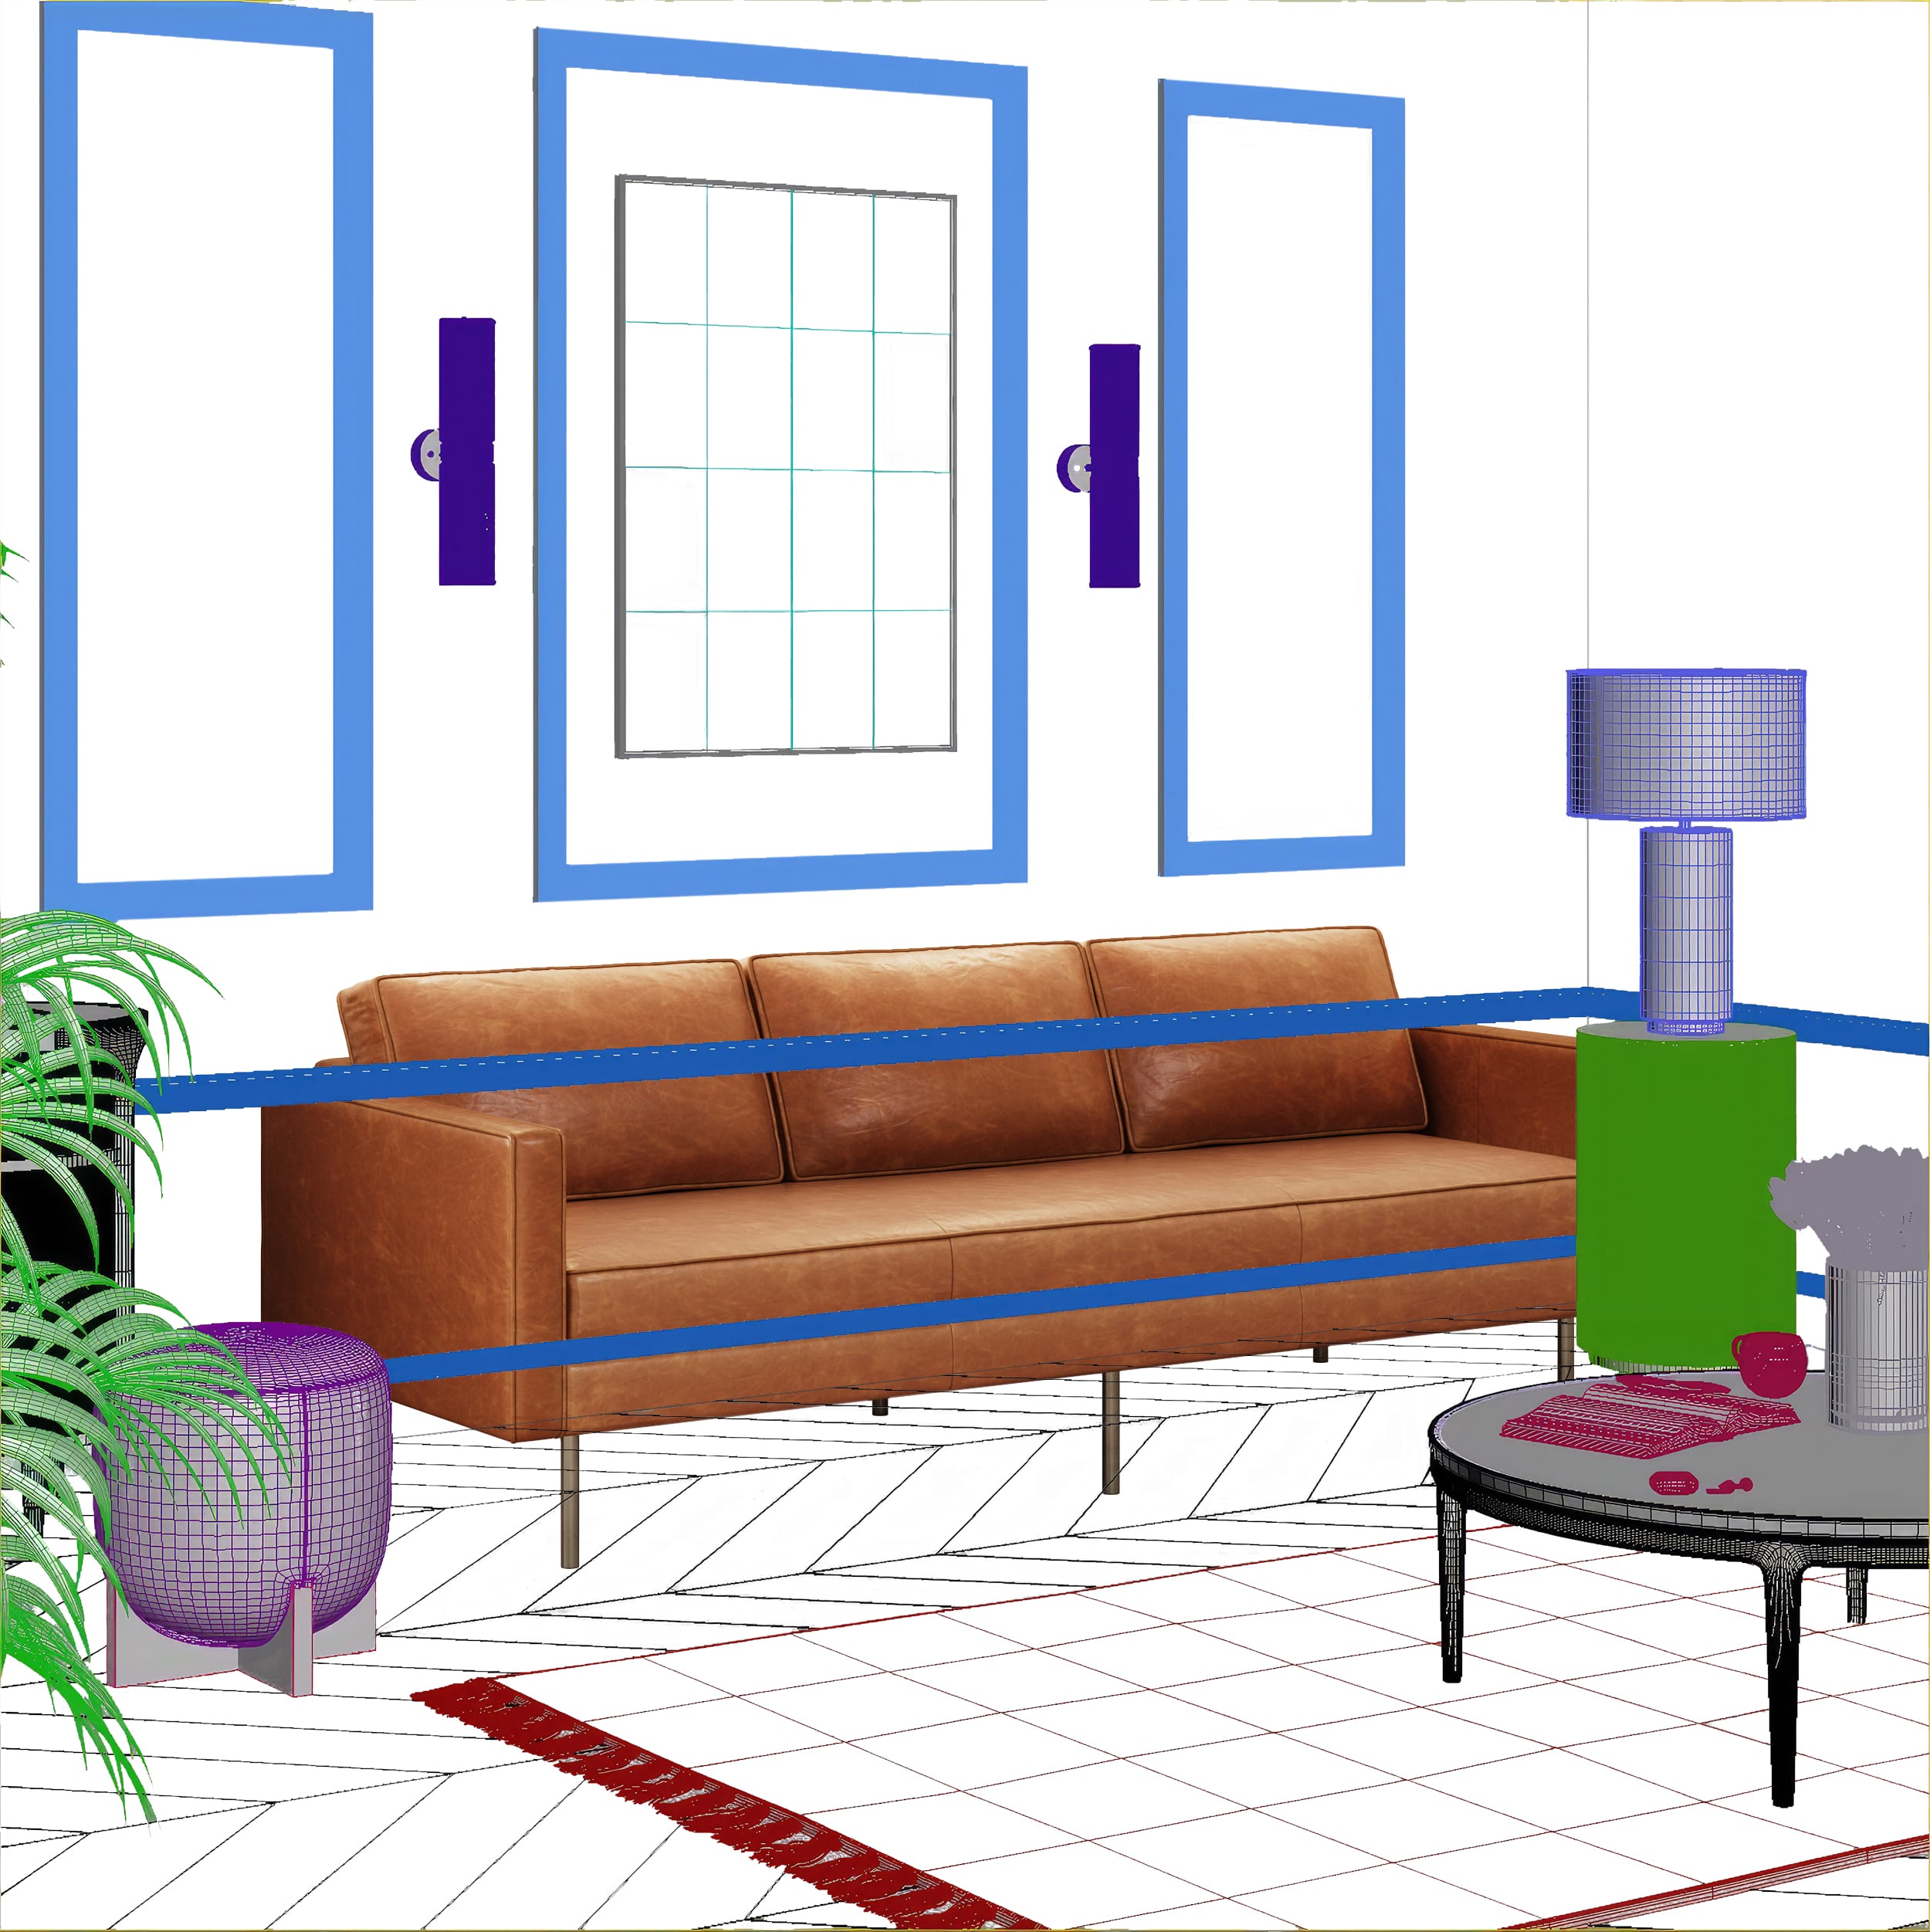 3D Scene for a Sofa Model